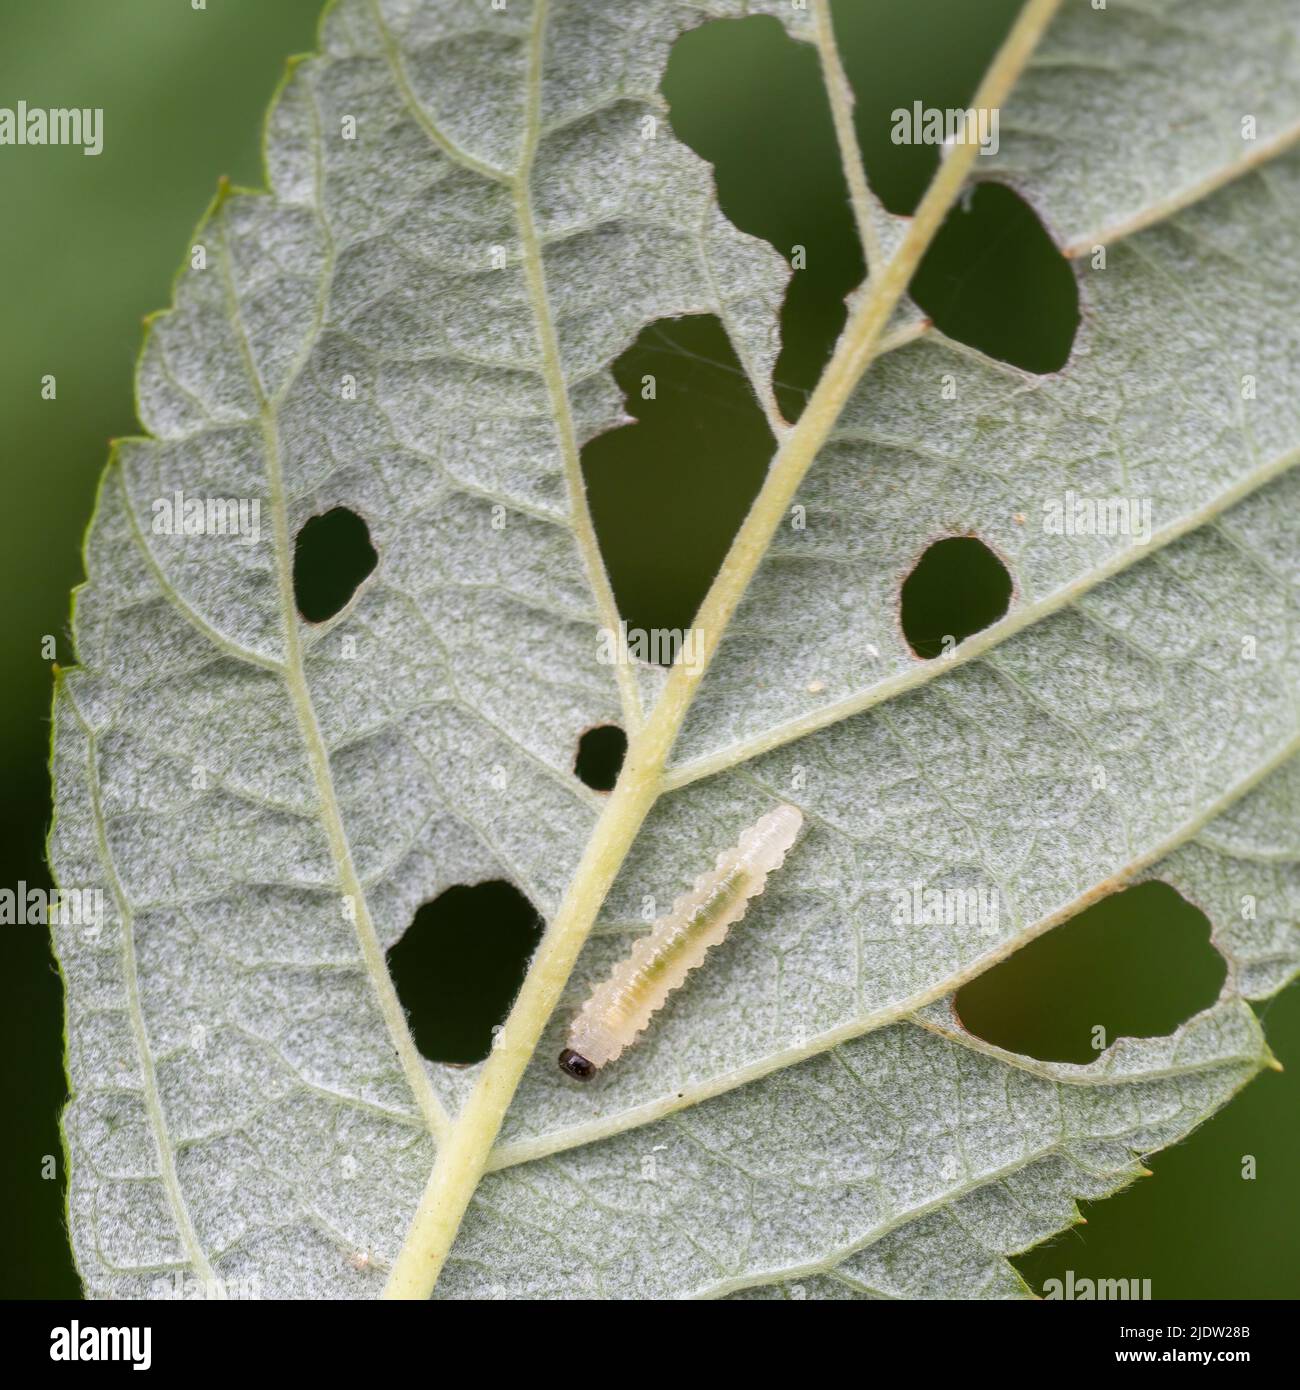 Mosca de la frambuesa Monophadnoides geniculatus larva y daño en la hoja. Foto de stock